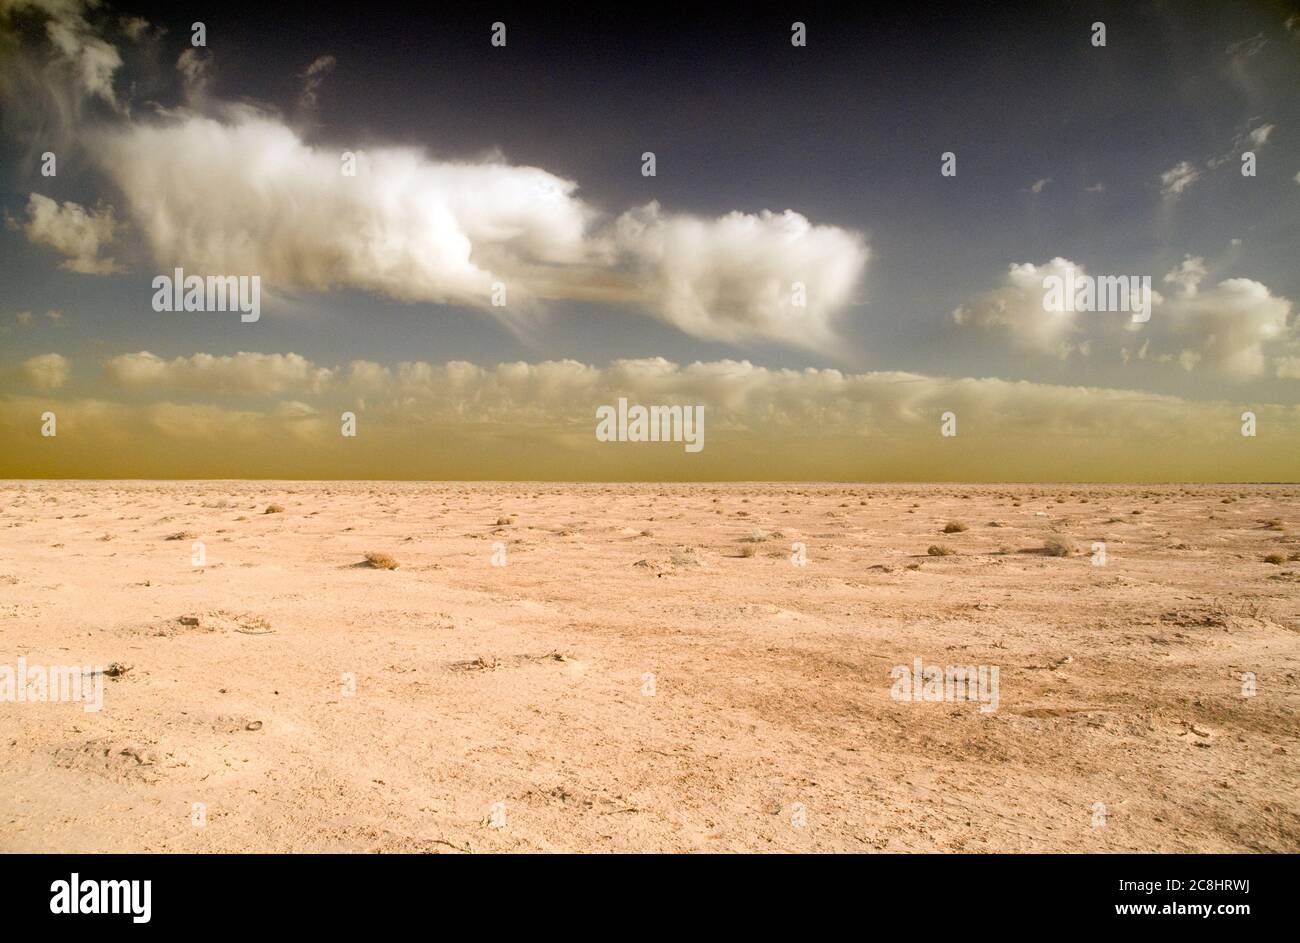 Die Badia Region der verlassenen jordanischen östlichen Wüste lang die Grenze von Saudi-Arabien, in der Nähe von al-Omari, Jordanien. Stockfoto